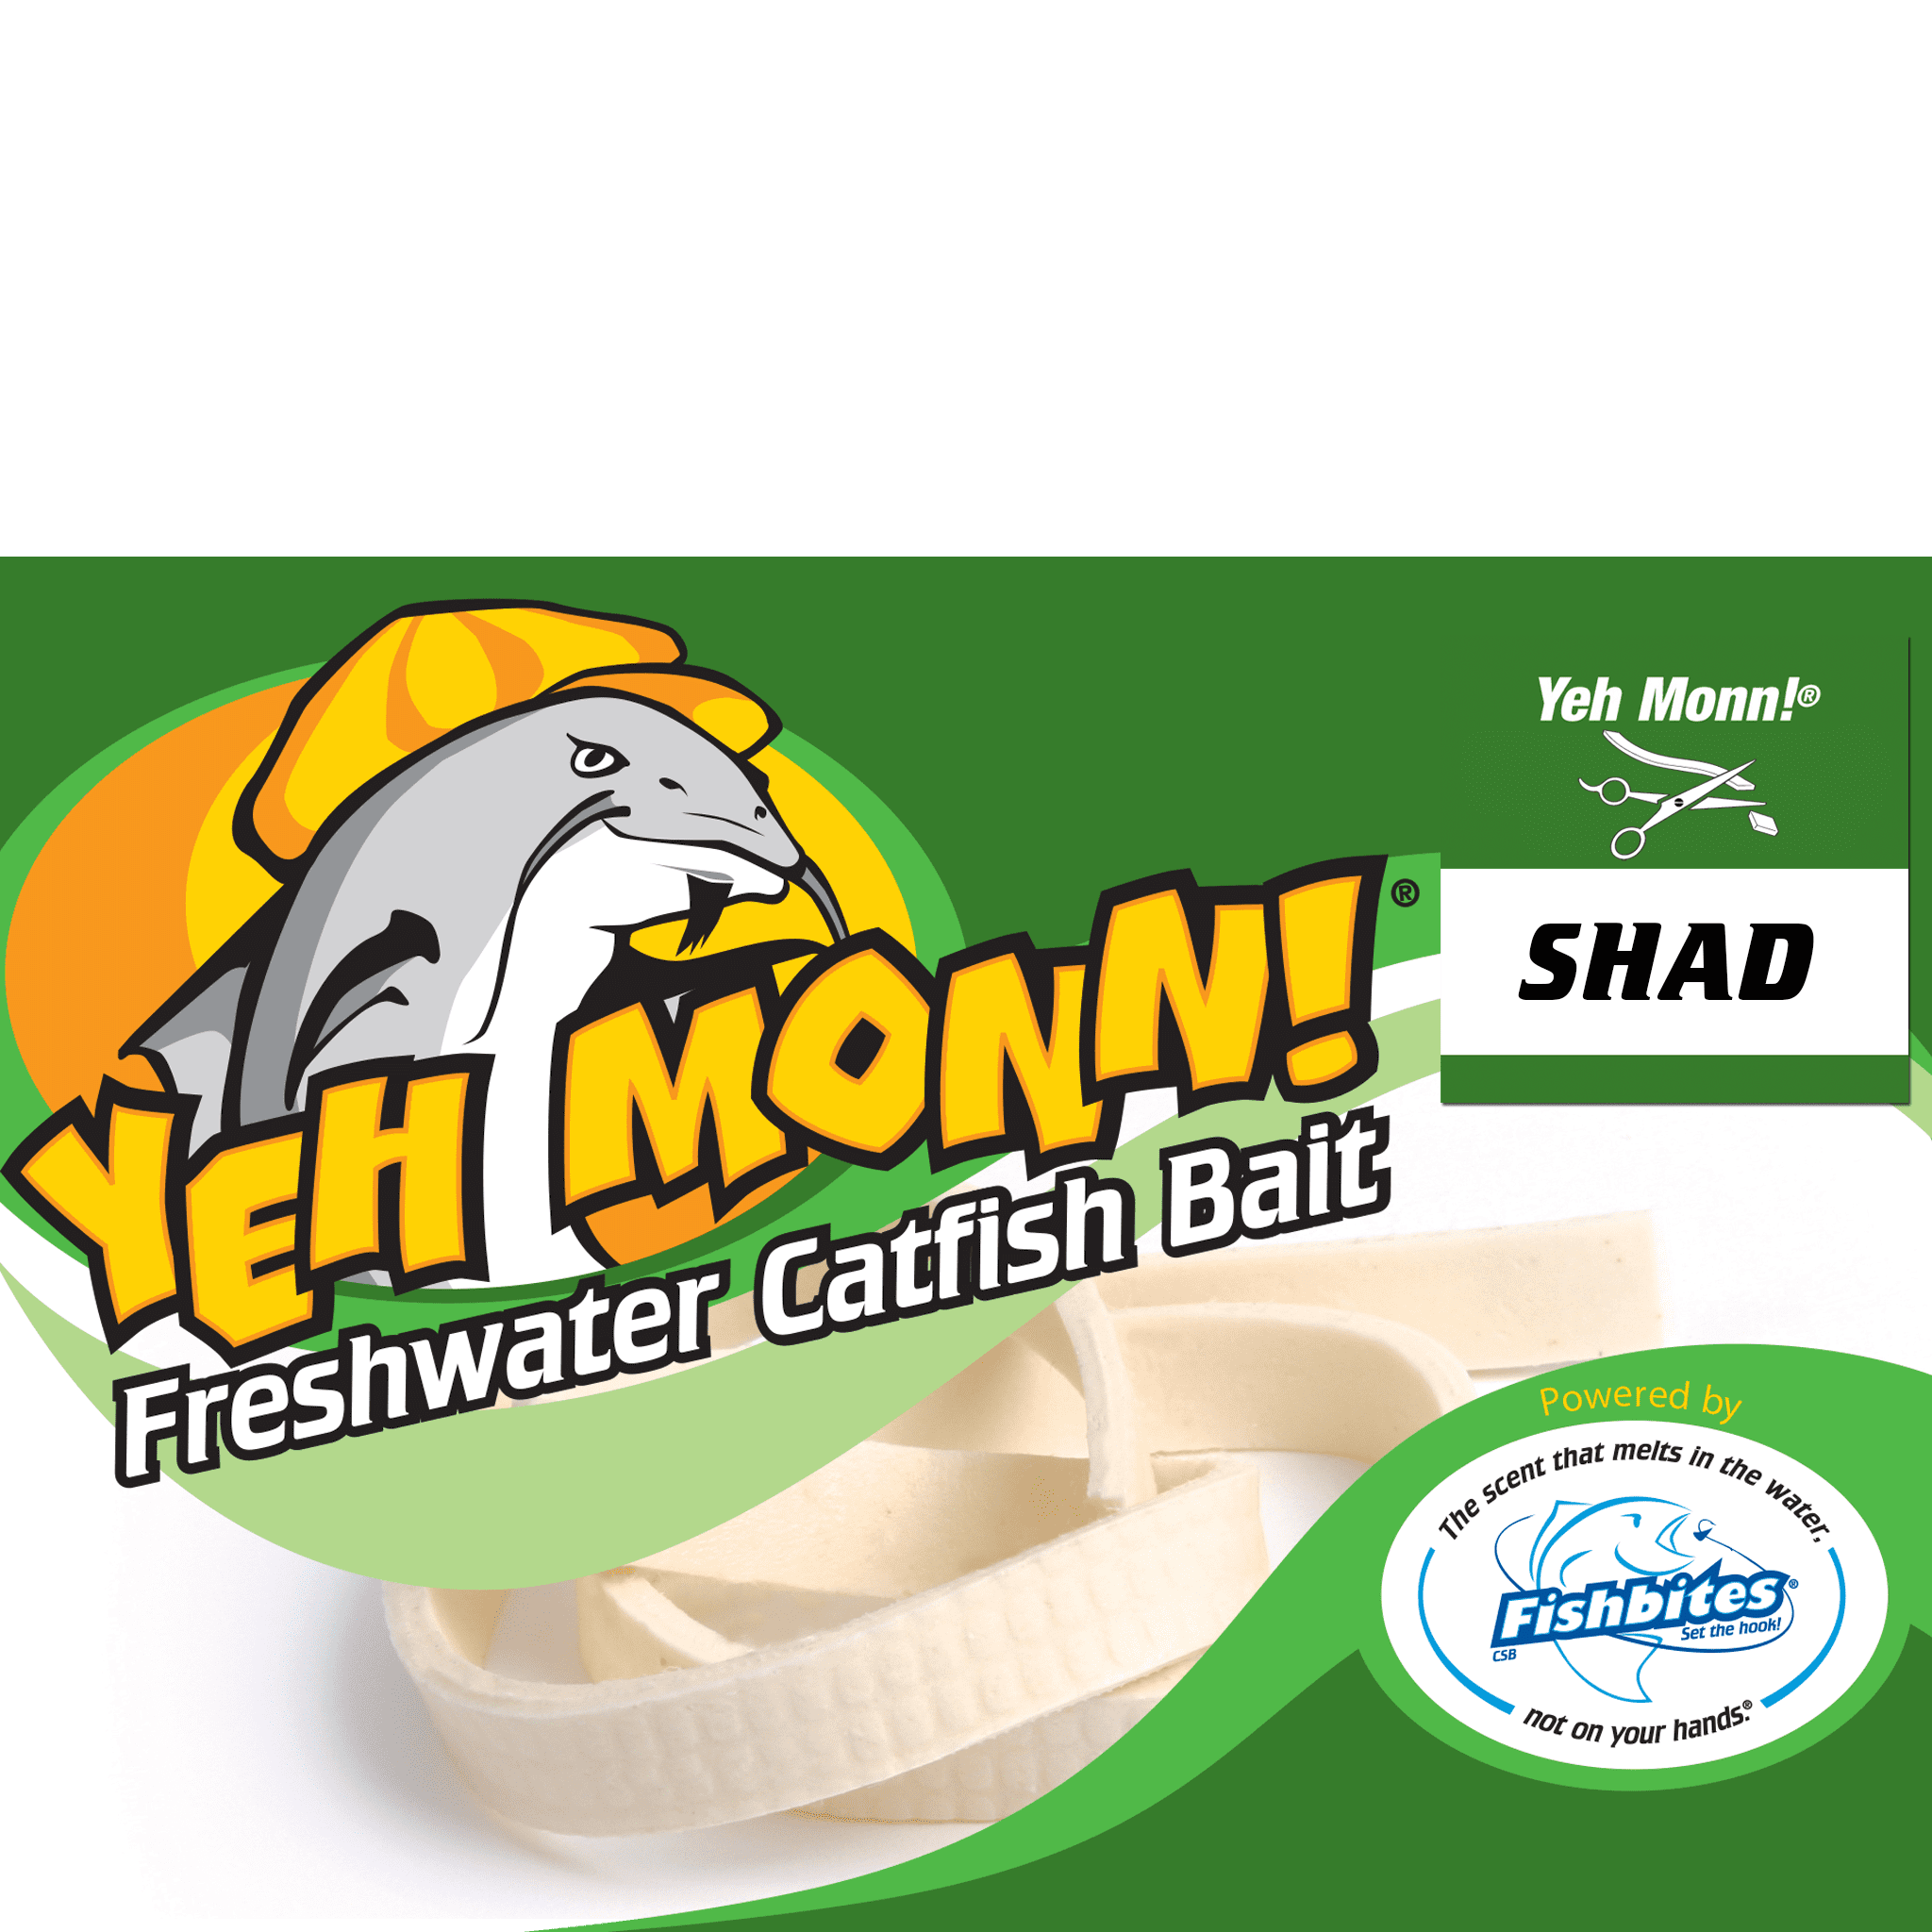 Fishbites Yeh Monn! Catfish Bait, Shad